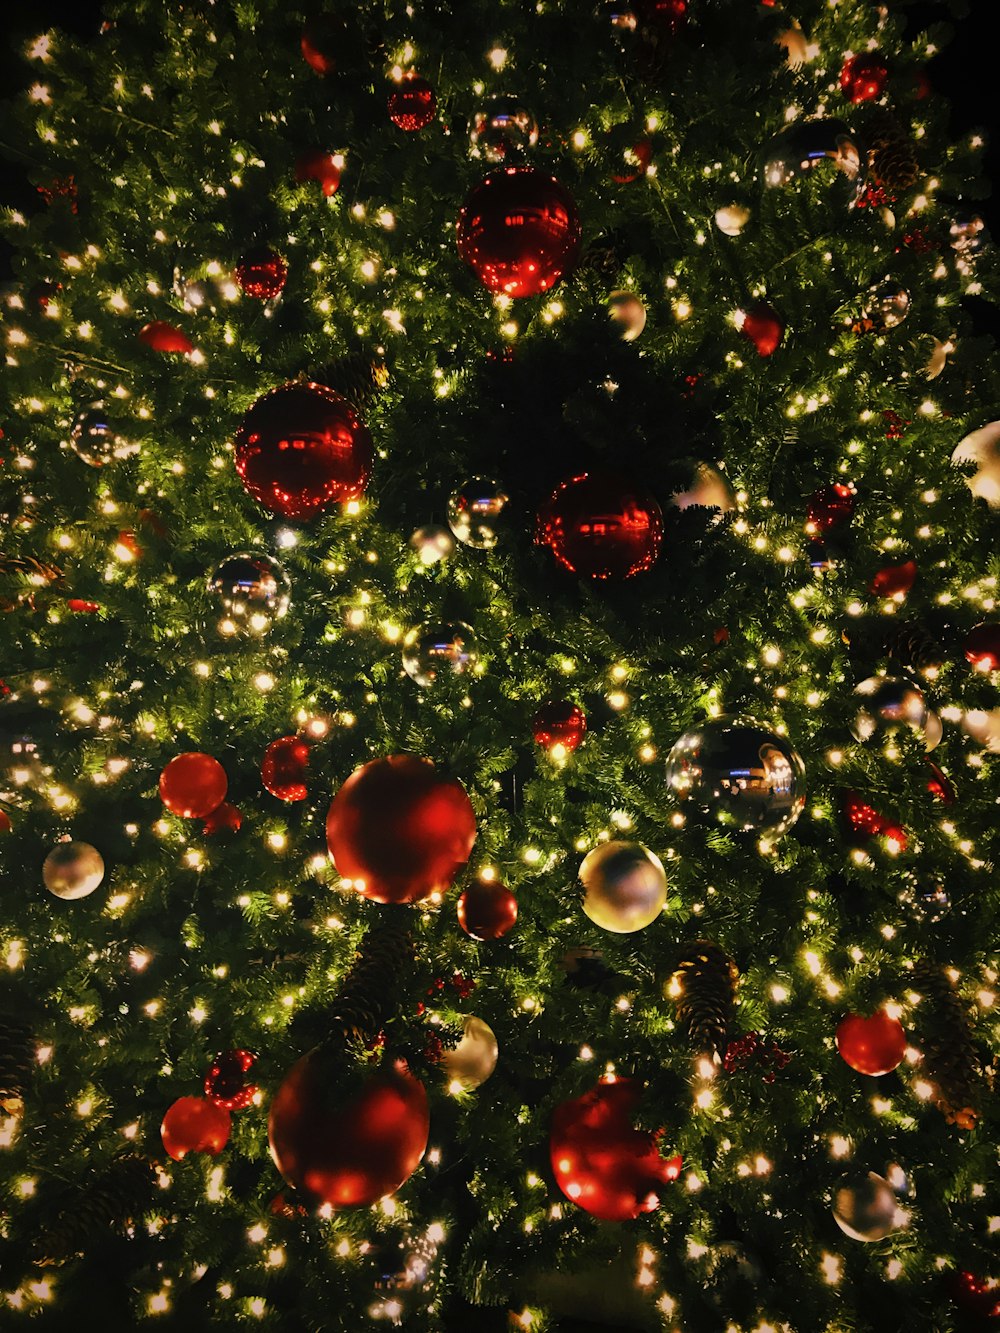 ver fotografia da árvore de Natal com enfeites e luzes de corda iluminadas